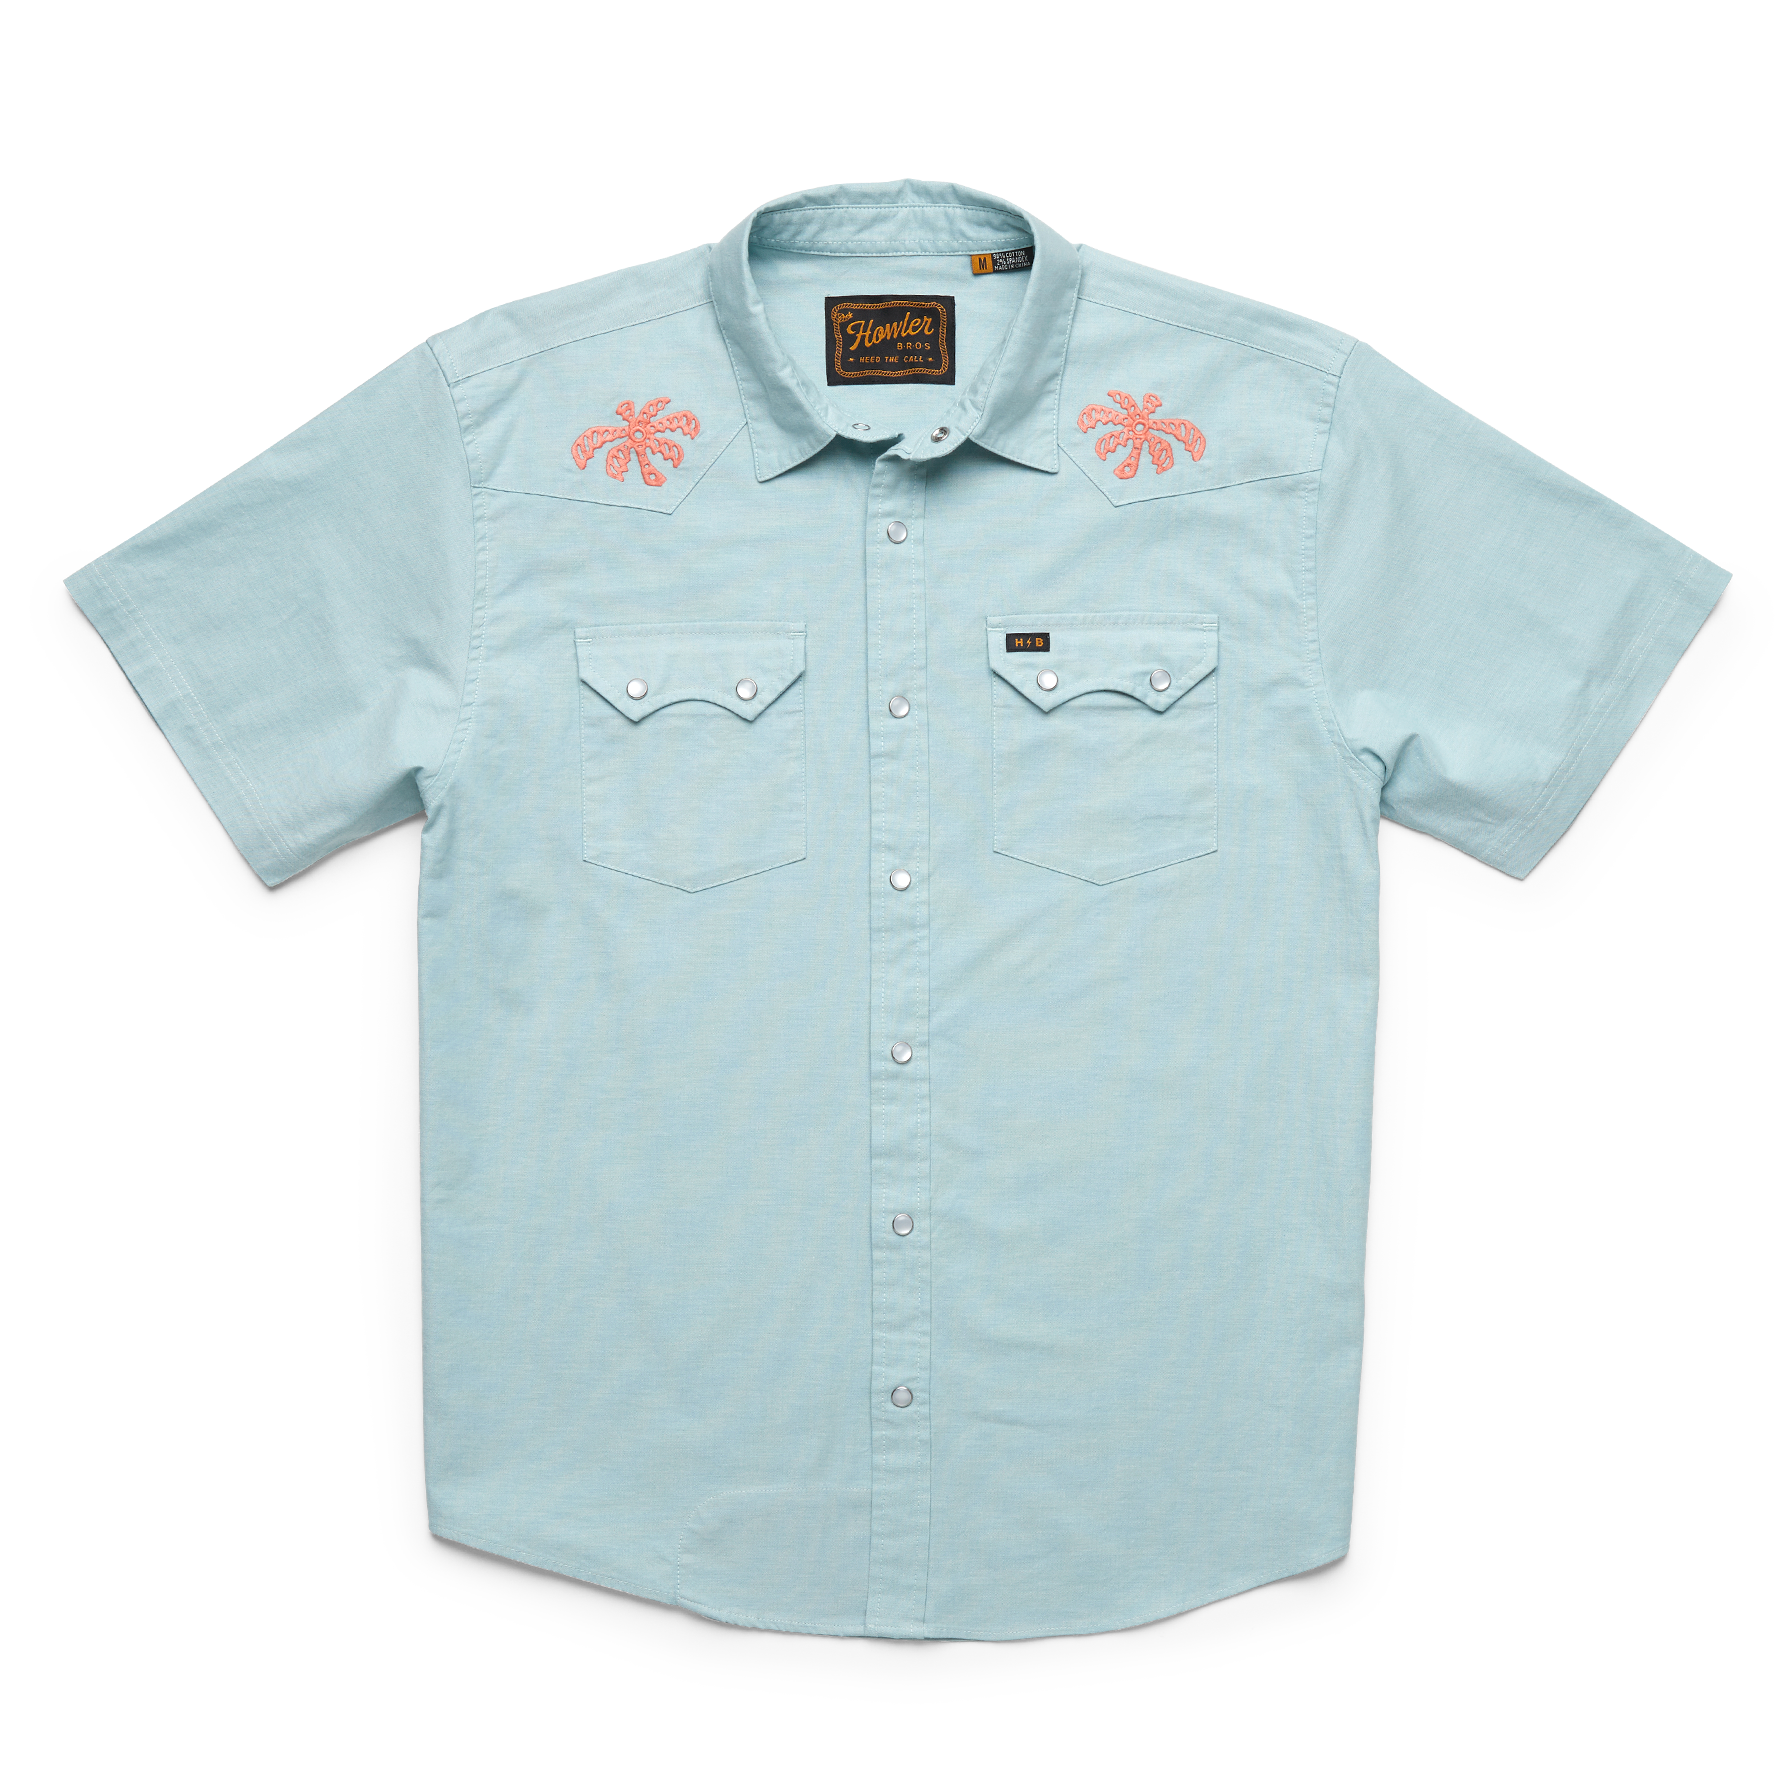 AFF Blue T-Shirt (L, XL, & 2XL) – Arkansas Fly Fishers